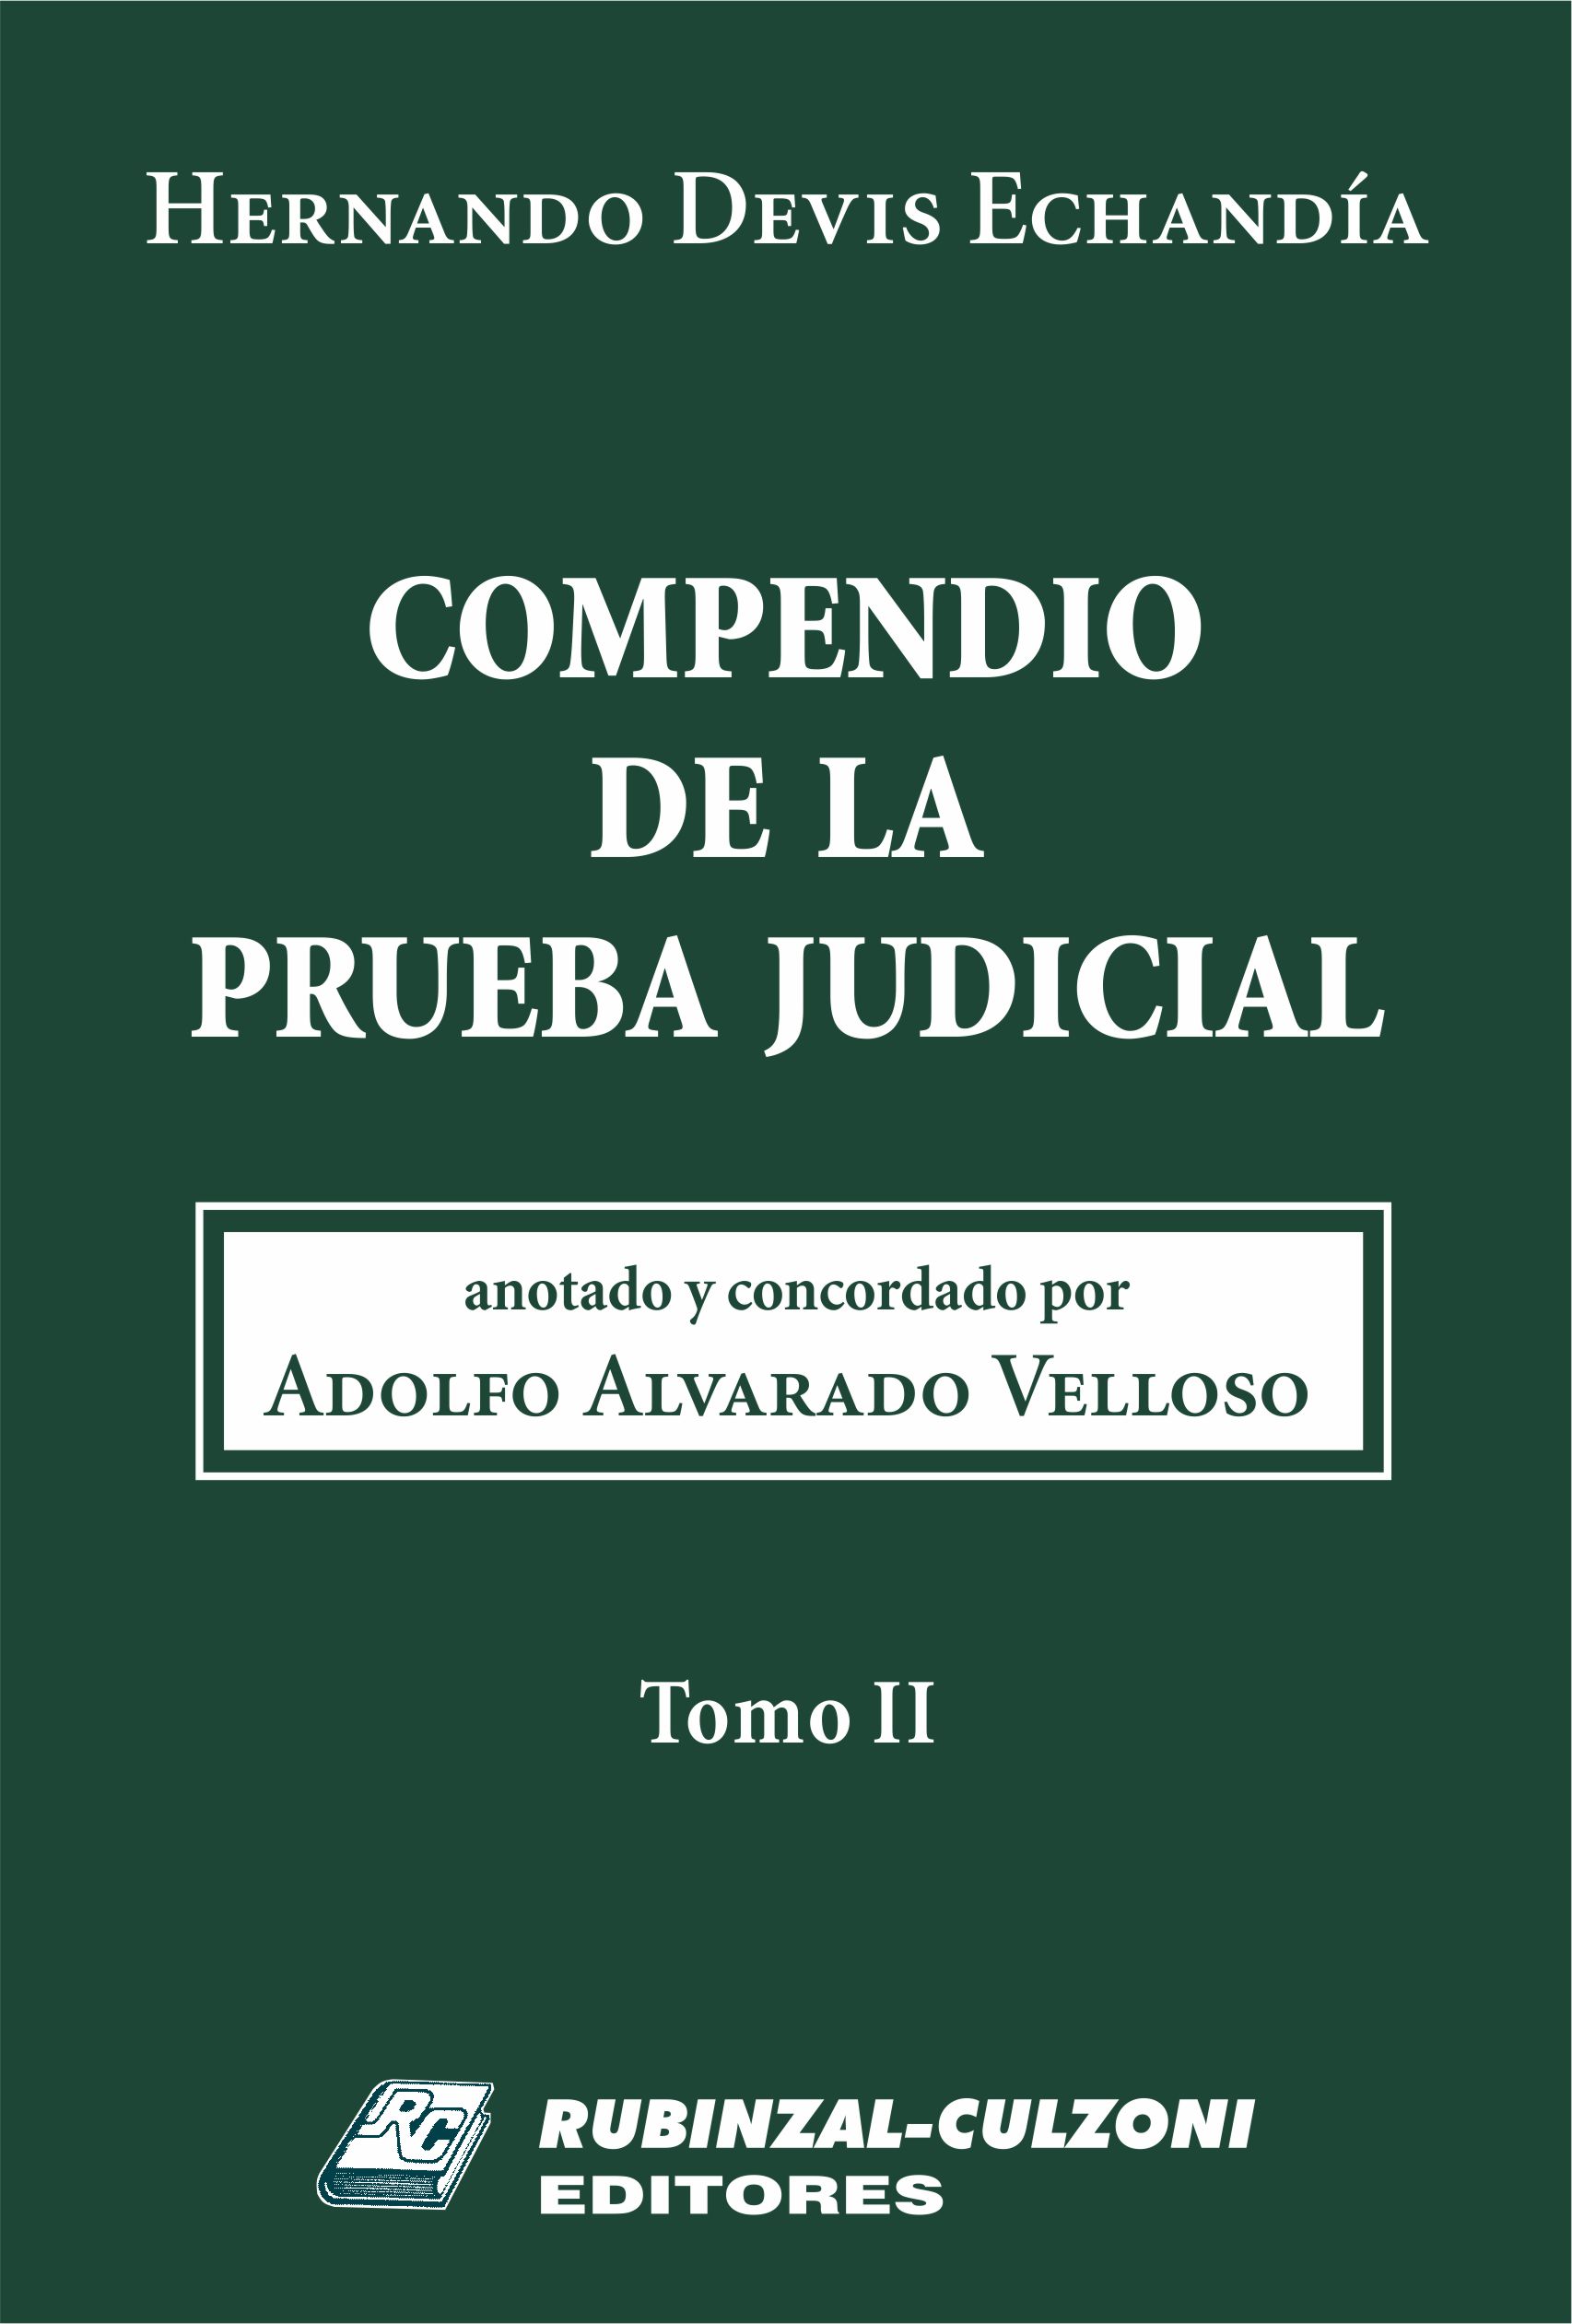 Compendio de la prueba judicial. Anotado y concordado por Adolfo Alvarado Velloso. - Tomo II.